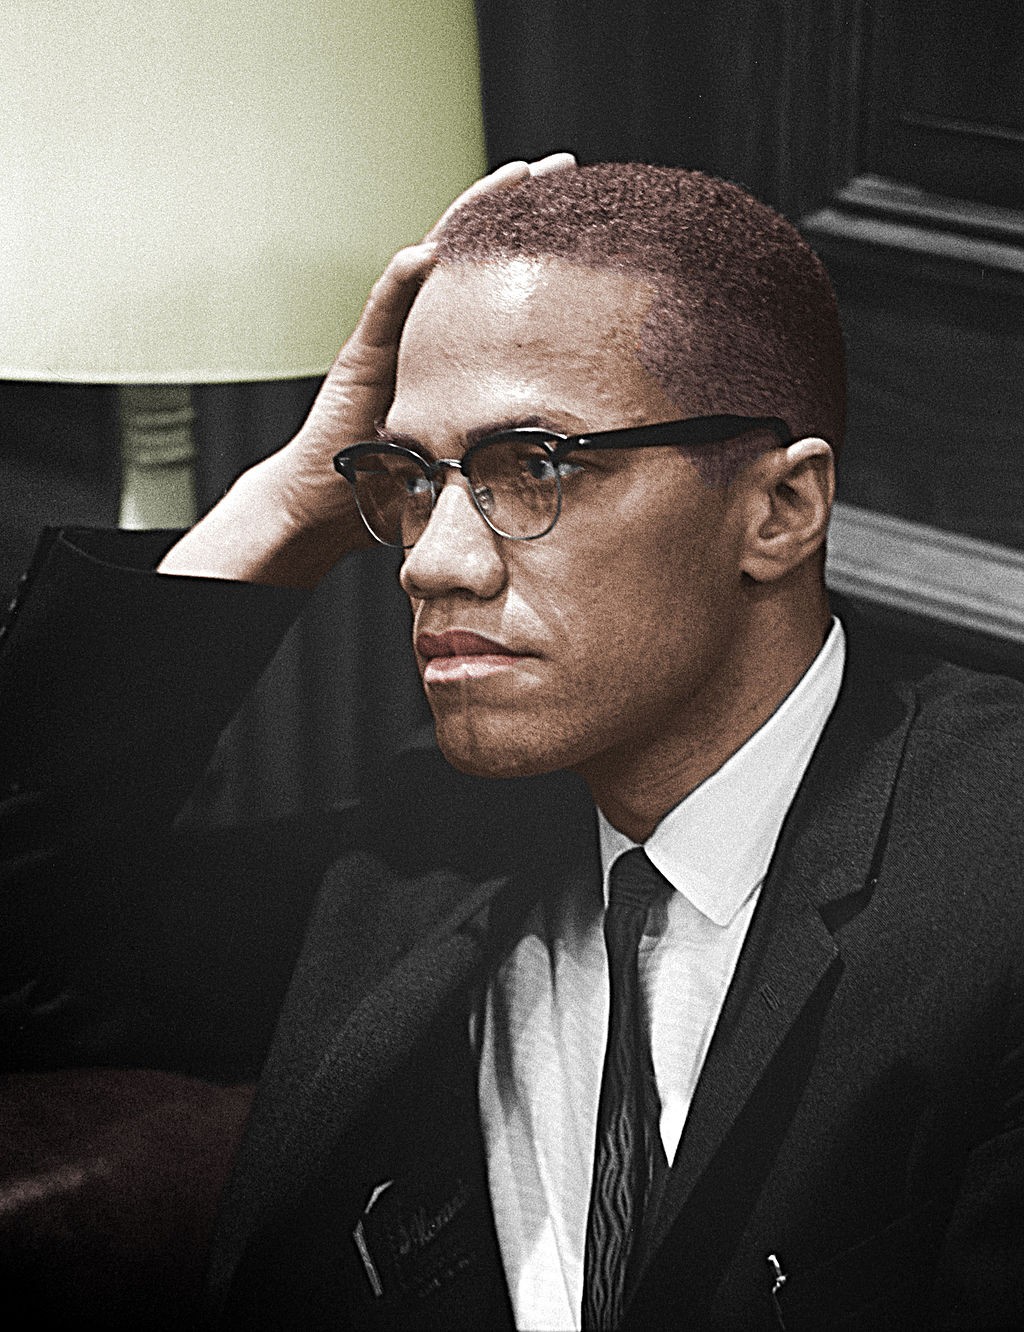 Foto colorizada de Malcolm X, ativista que defendia o nacionalismo negro nos EUA (Foto: Marion S. Trikosko (colorização))